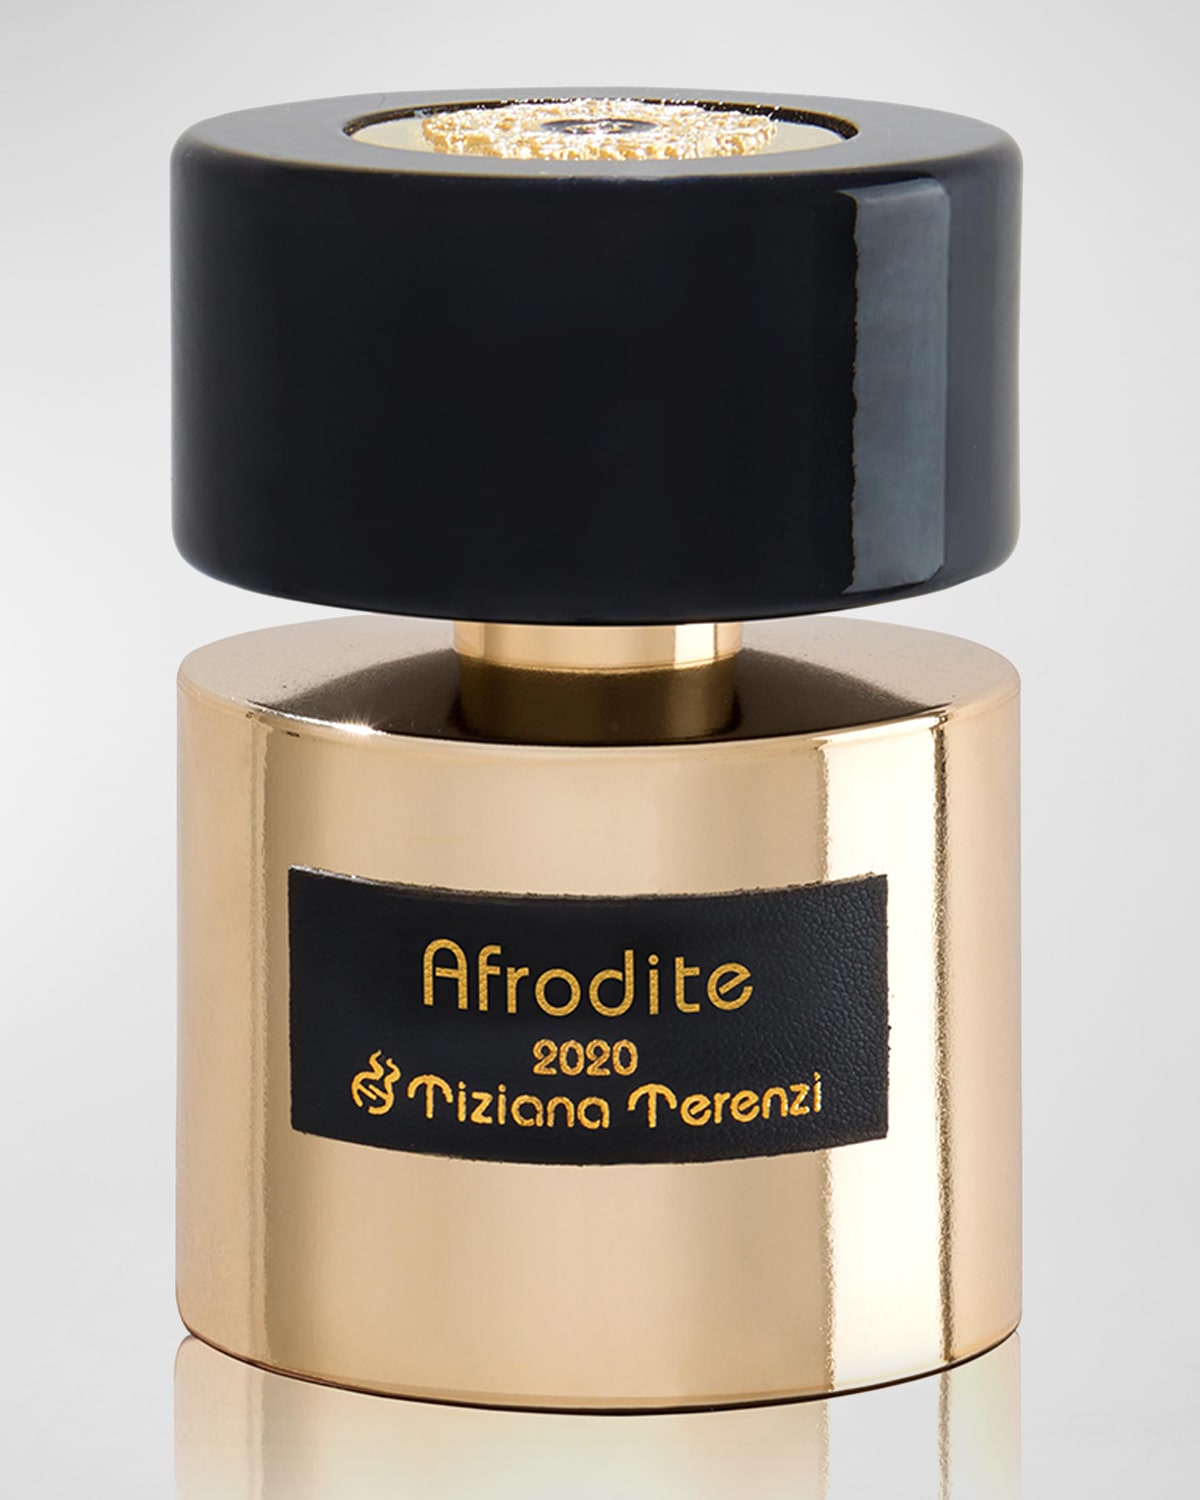 3.3 oz. Afrodite Extrait de Parfum